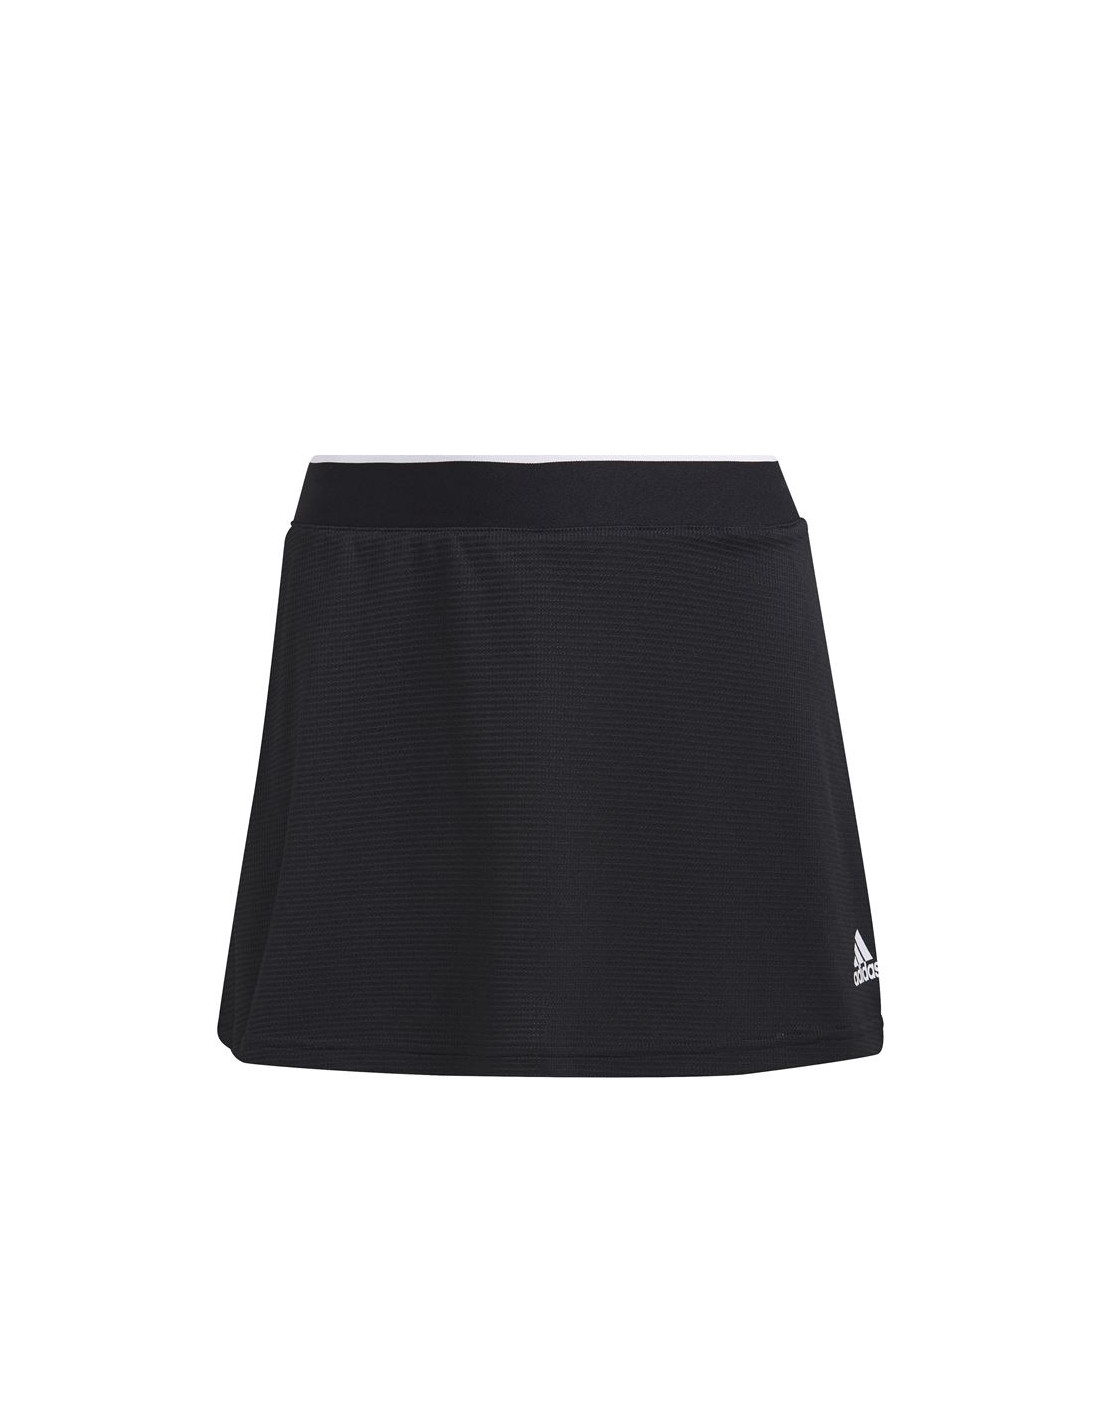 nombre de la marca Maldición Honorable Nuevo Tenis Adidas Negros Mujer | Compra Online a Precios Super Baratos